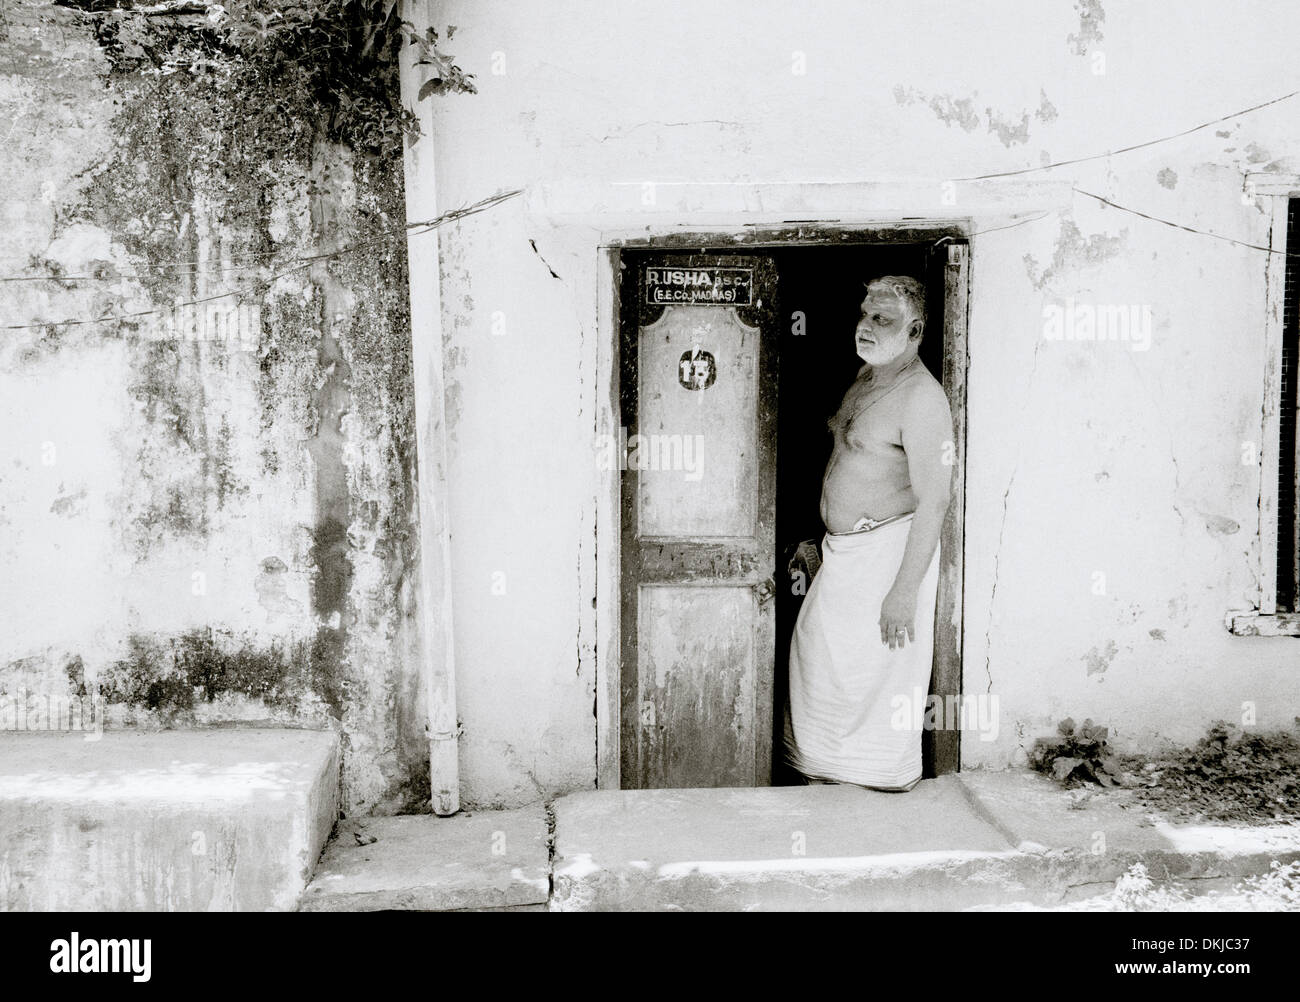 Mann zu Hause in Chennai Madras in Tamil Nadu in Indien in Südasien. Indische Tür Tür Haus Armut Slum Kultur Leben Lifestyle Reisen Stockfoto